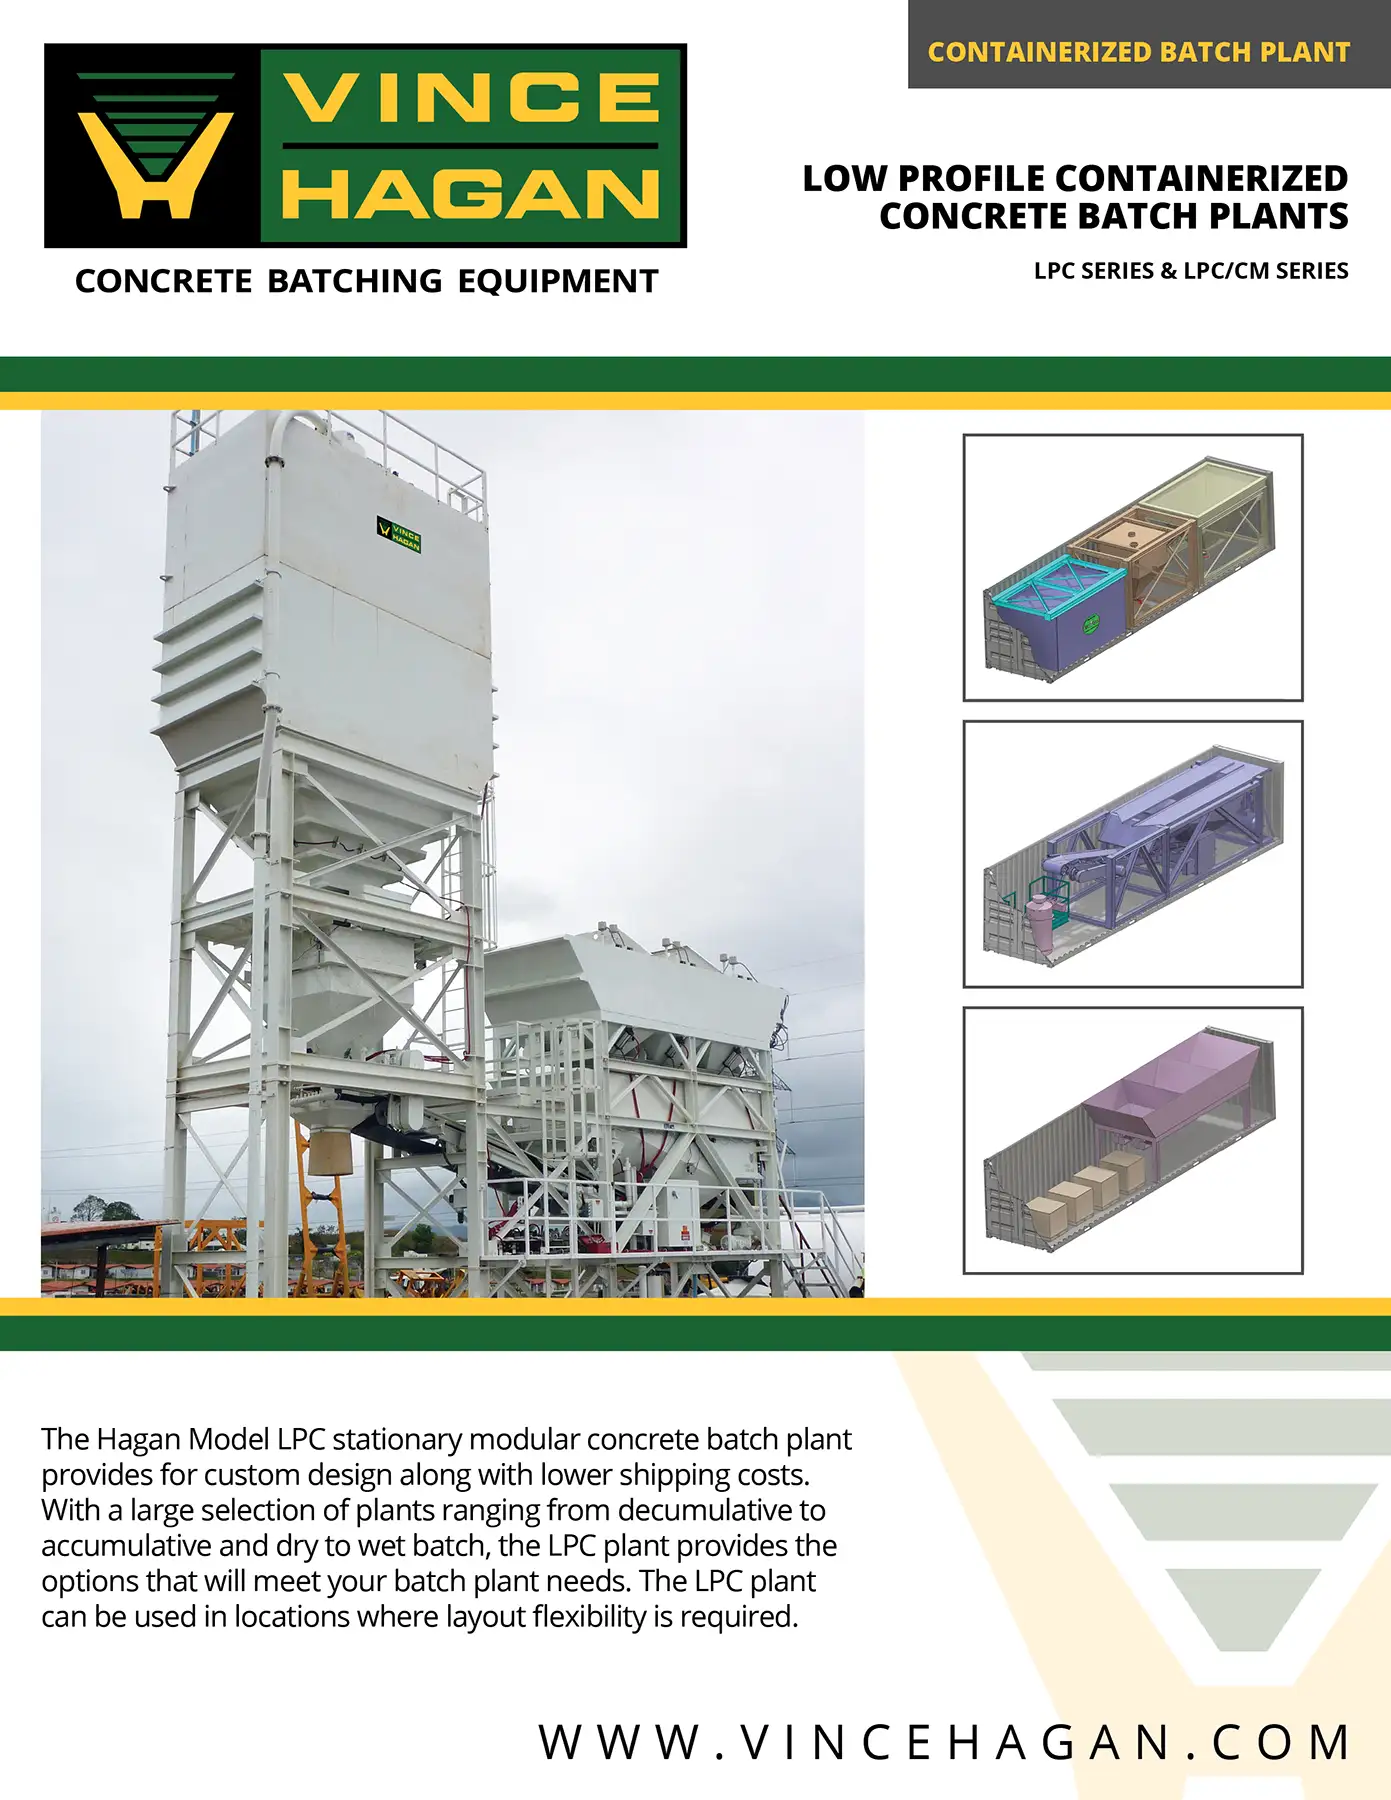 Concrete Batch Plant | Low Profile Containerized | Vince Hagan Product Brochure